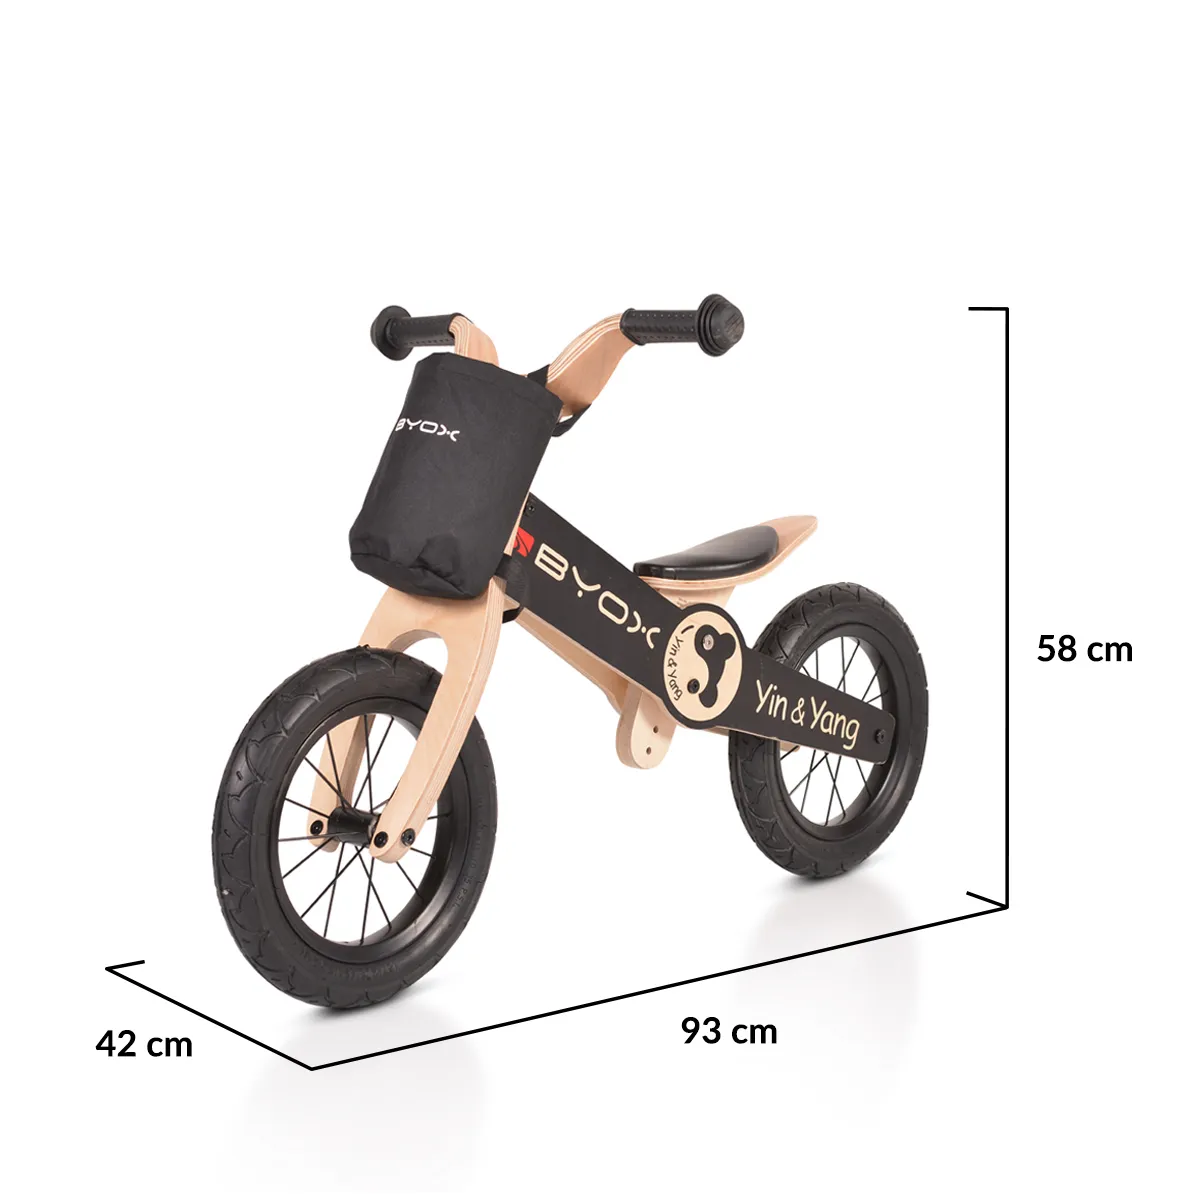 Дървен балансиращ велосипед BYOX до 30кг, регулиране на седалката, YIN & YANG ЧЕРЕН 8